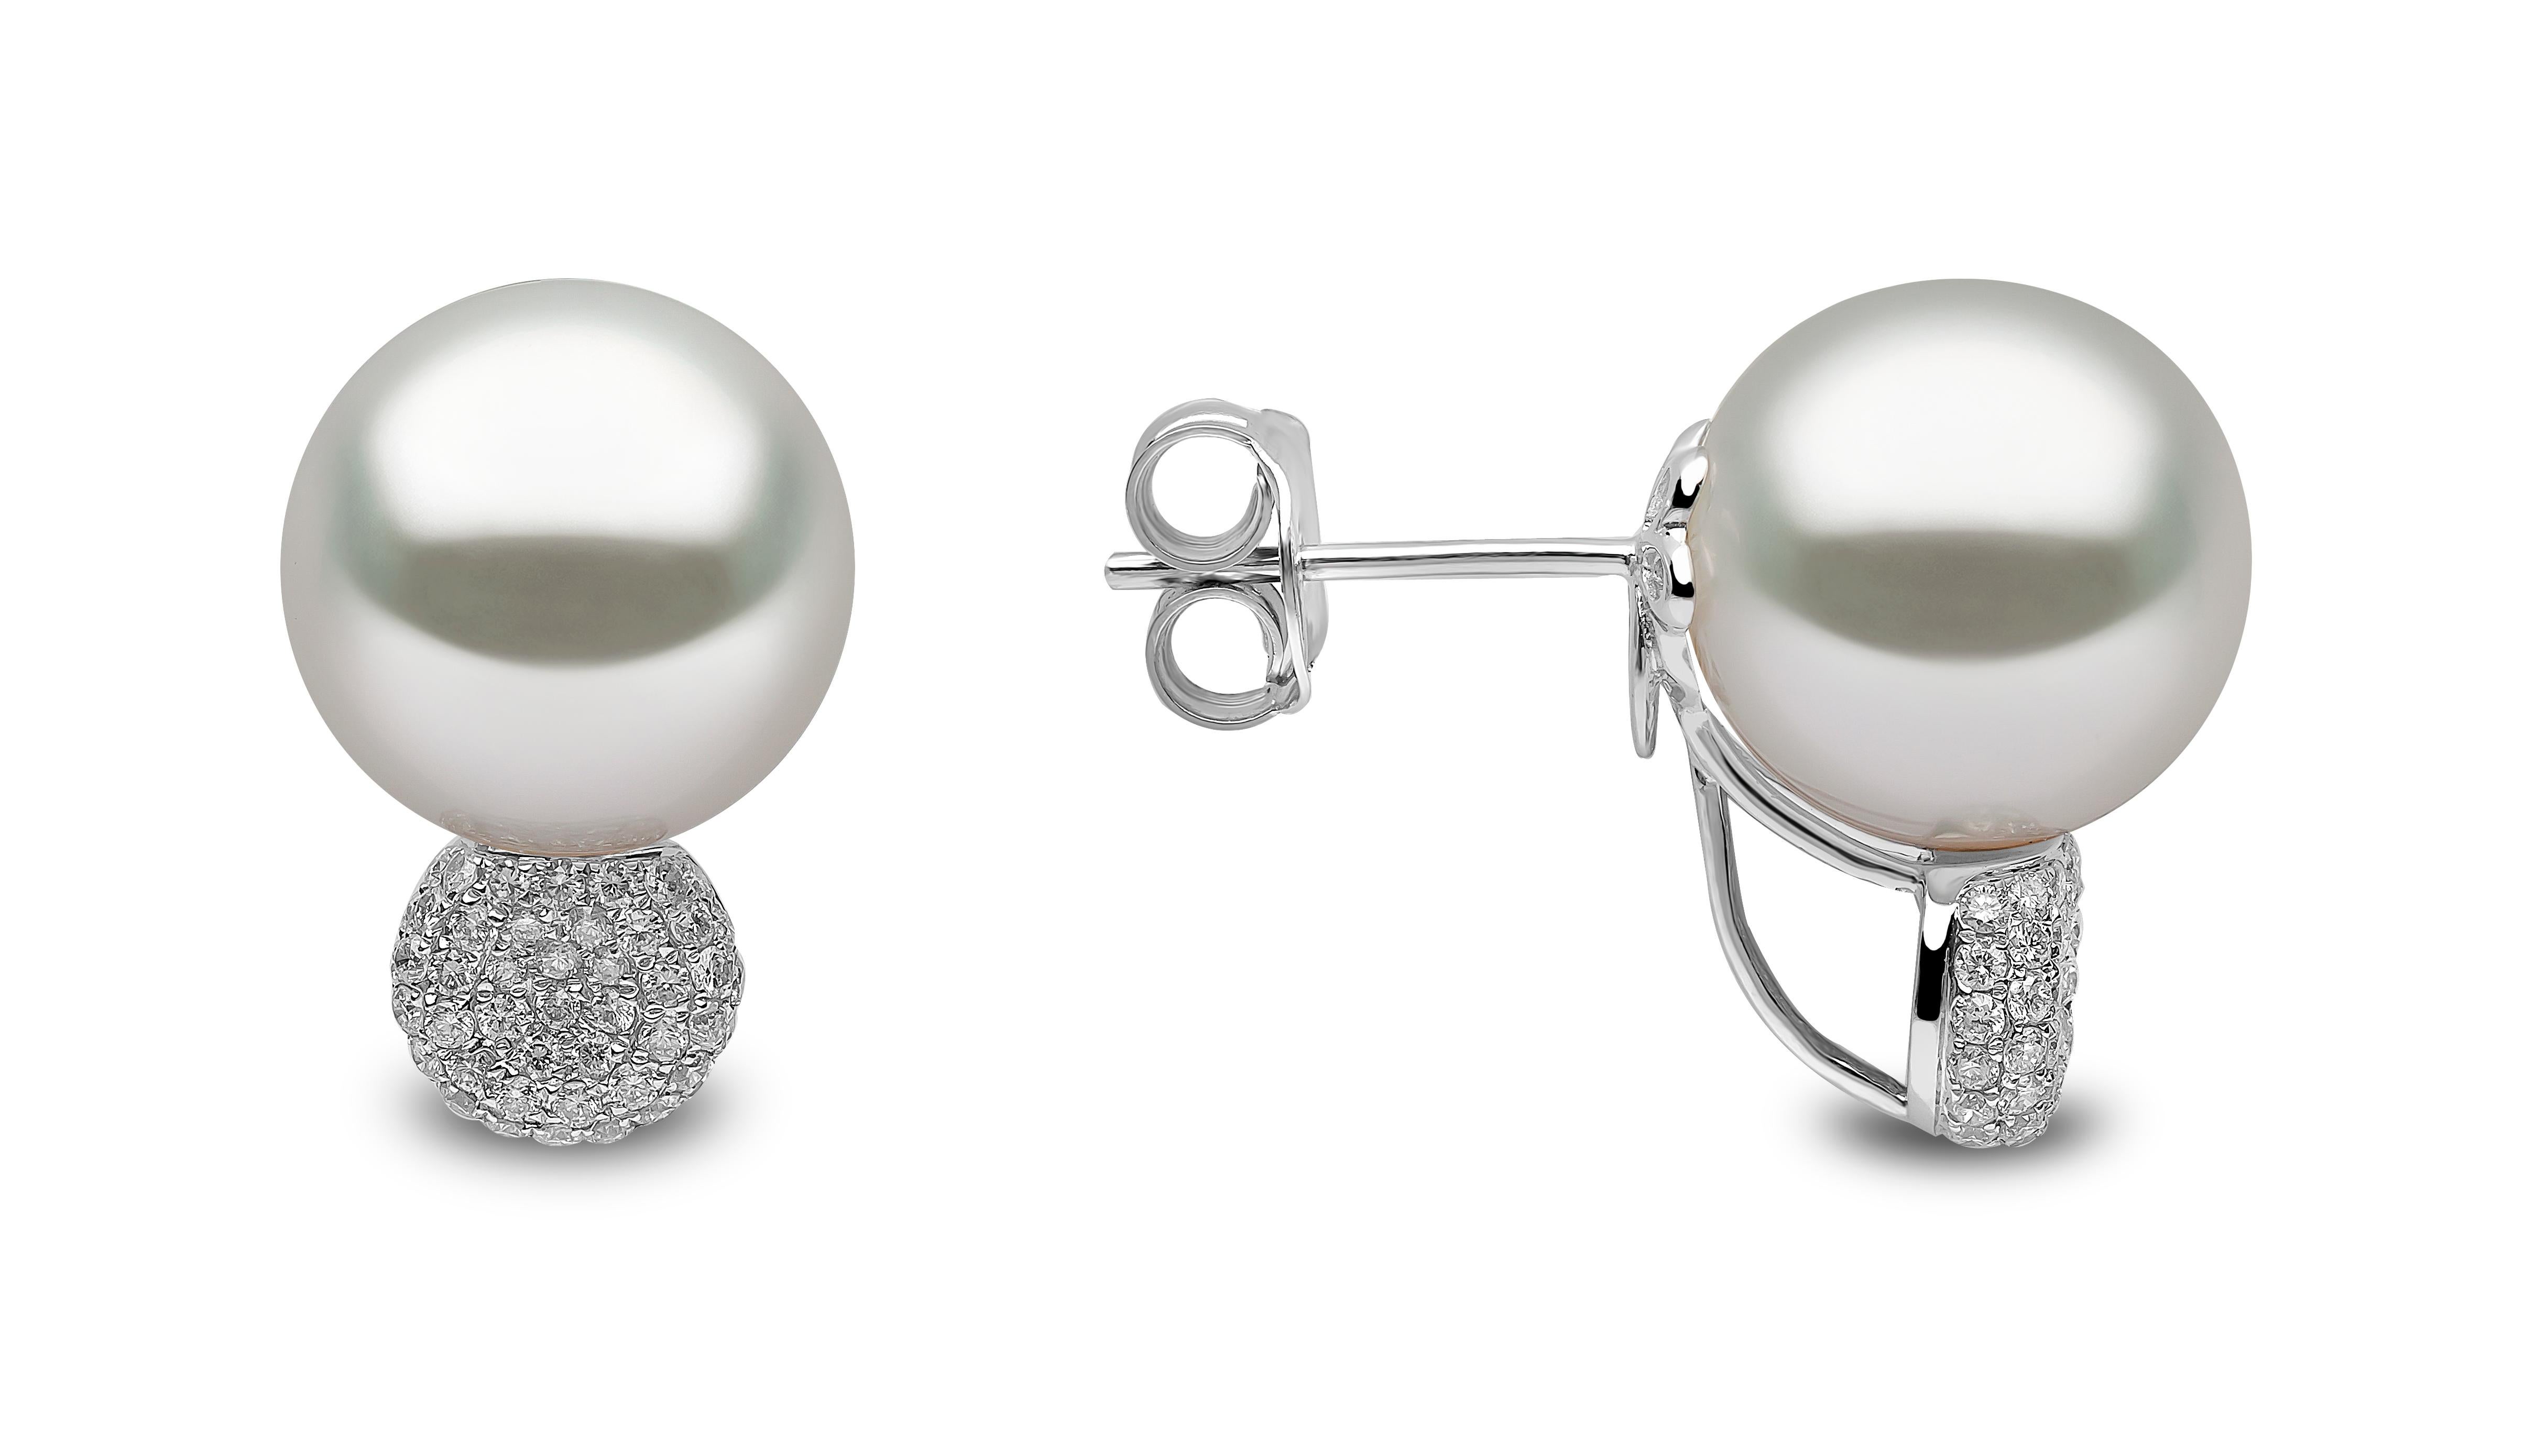 Diese eleganten Ohrringe von Yoko London bestehen aus glänzenden Südseeperlen und einem Cluster aus funkelnden Diamanten. Diese Ohrringe sind in 18 Karat Weißgold gefasst, um den Glanz der Perlen und der Diamanten zu verstärken. Sie sind eine